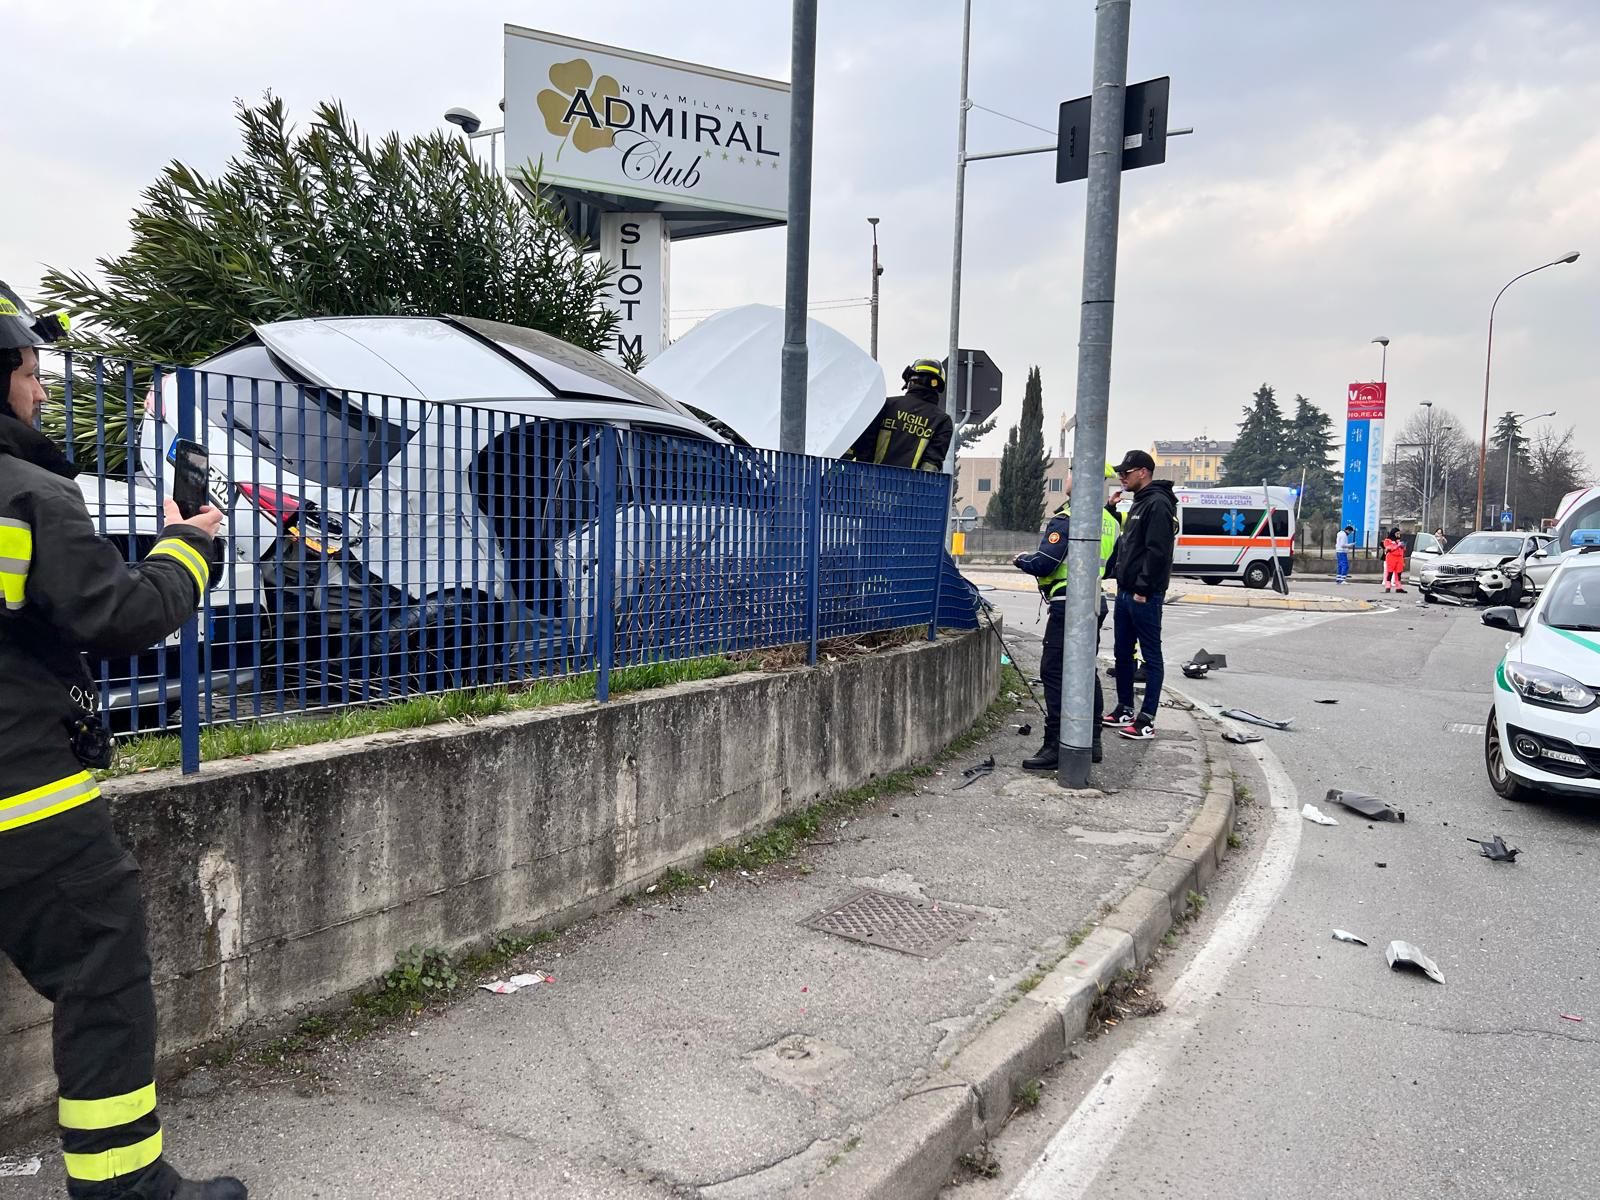 Nova milanese incidente auto sfonda recinzione